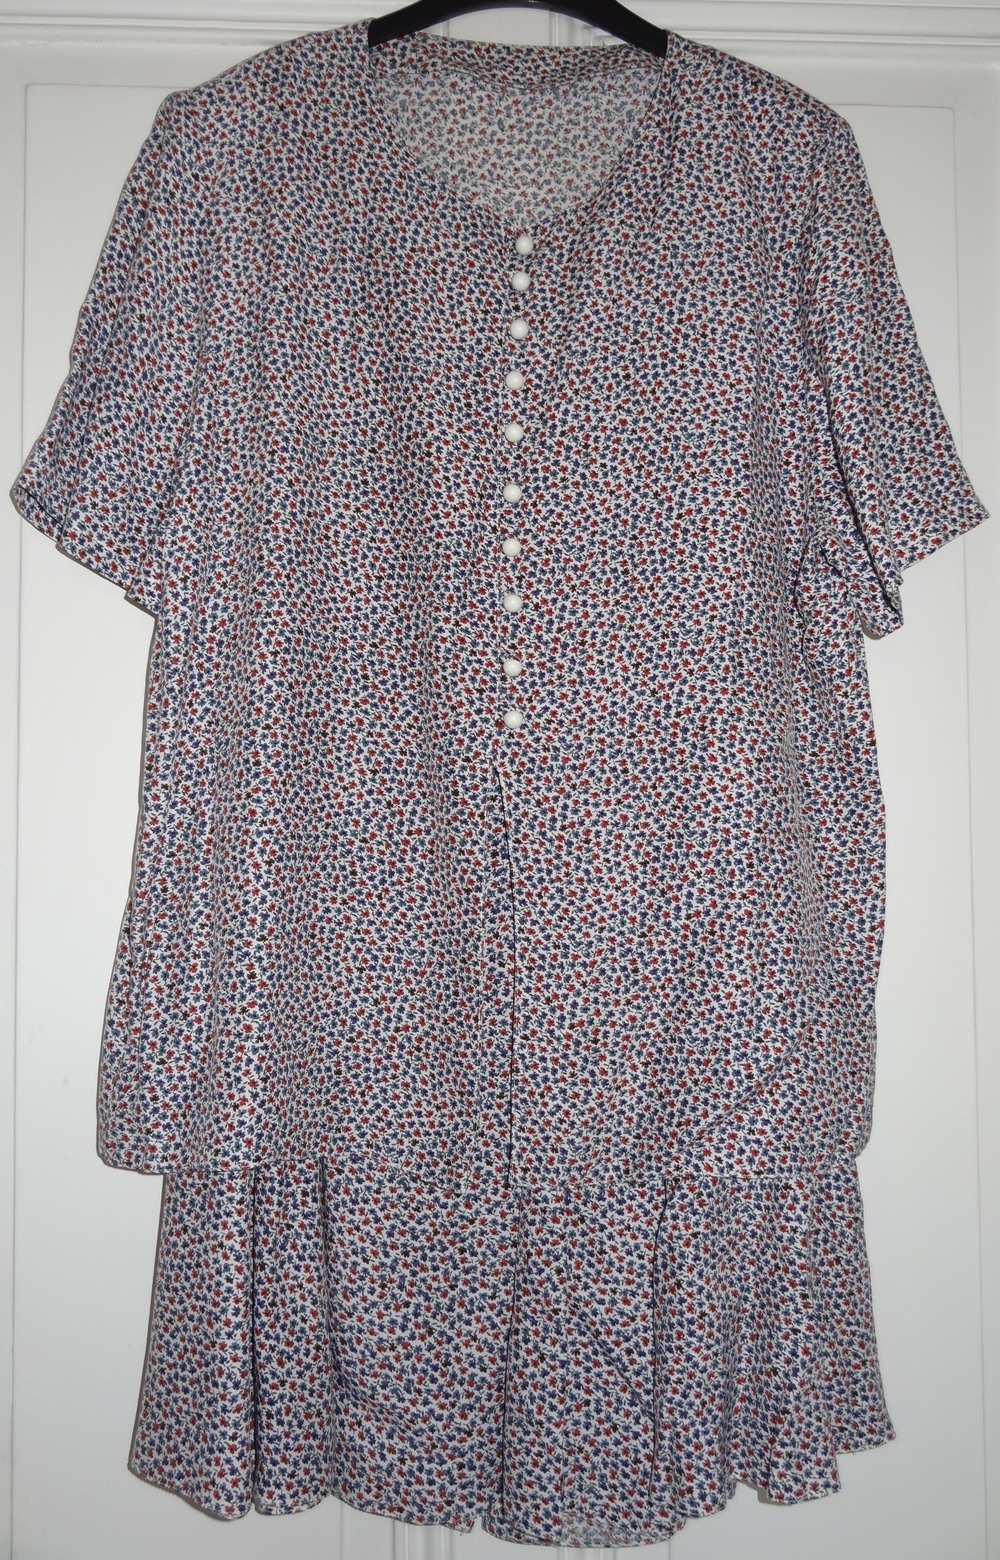 KI Kleid Sommerkleid Gr. 40 2 teilig Kombination älter sehr wenig getragen gut erhalten Kleidung